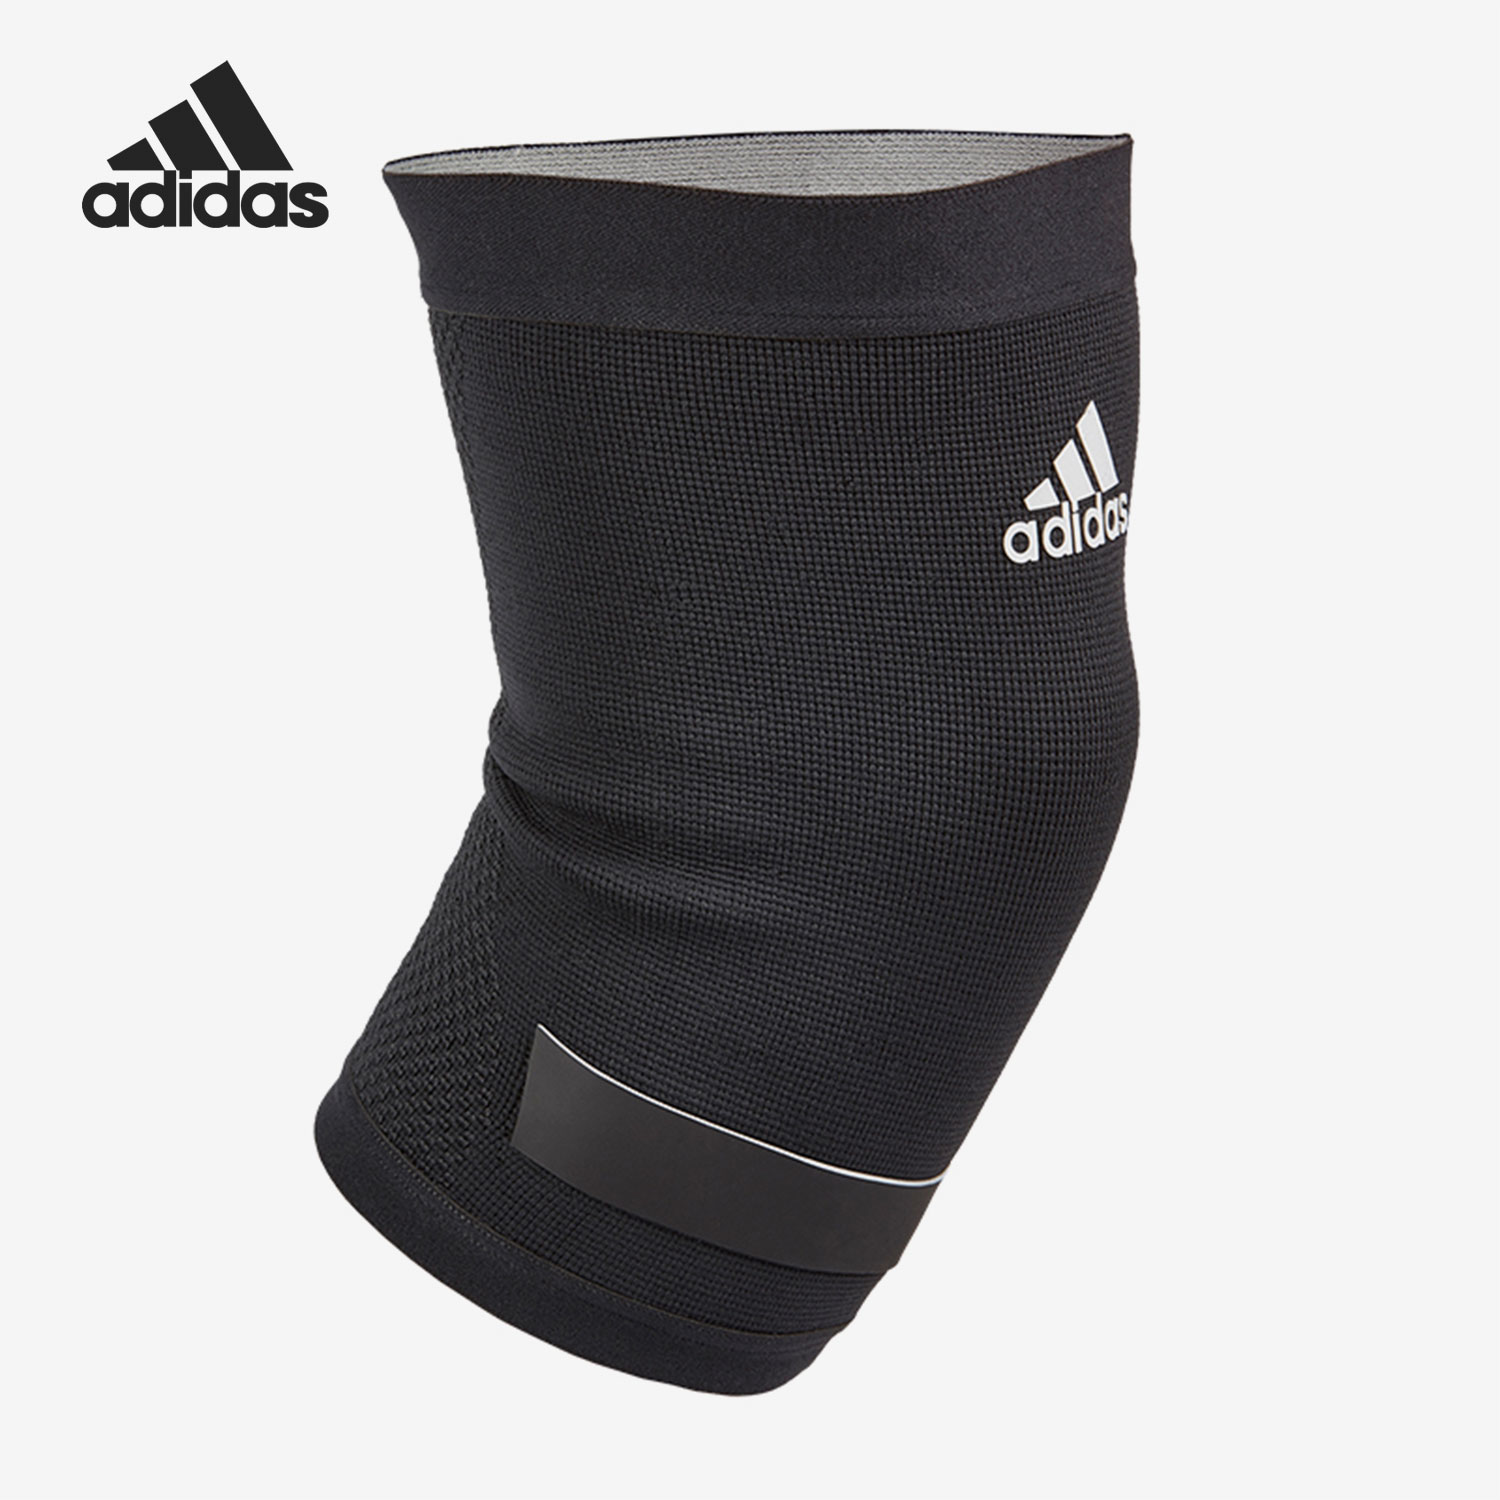 Adidas/阿迪达斯正品夏新训练健身运动男女护具护膝ADSU-1332